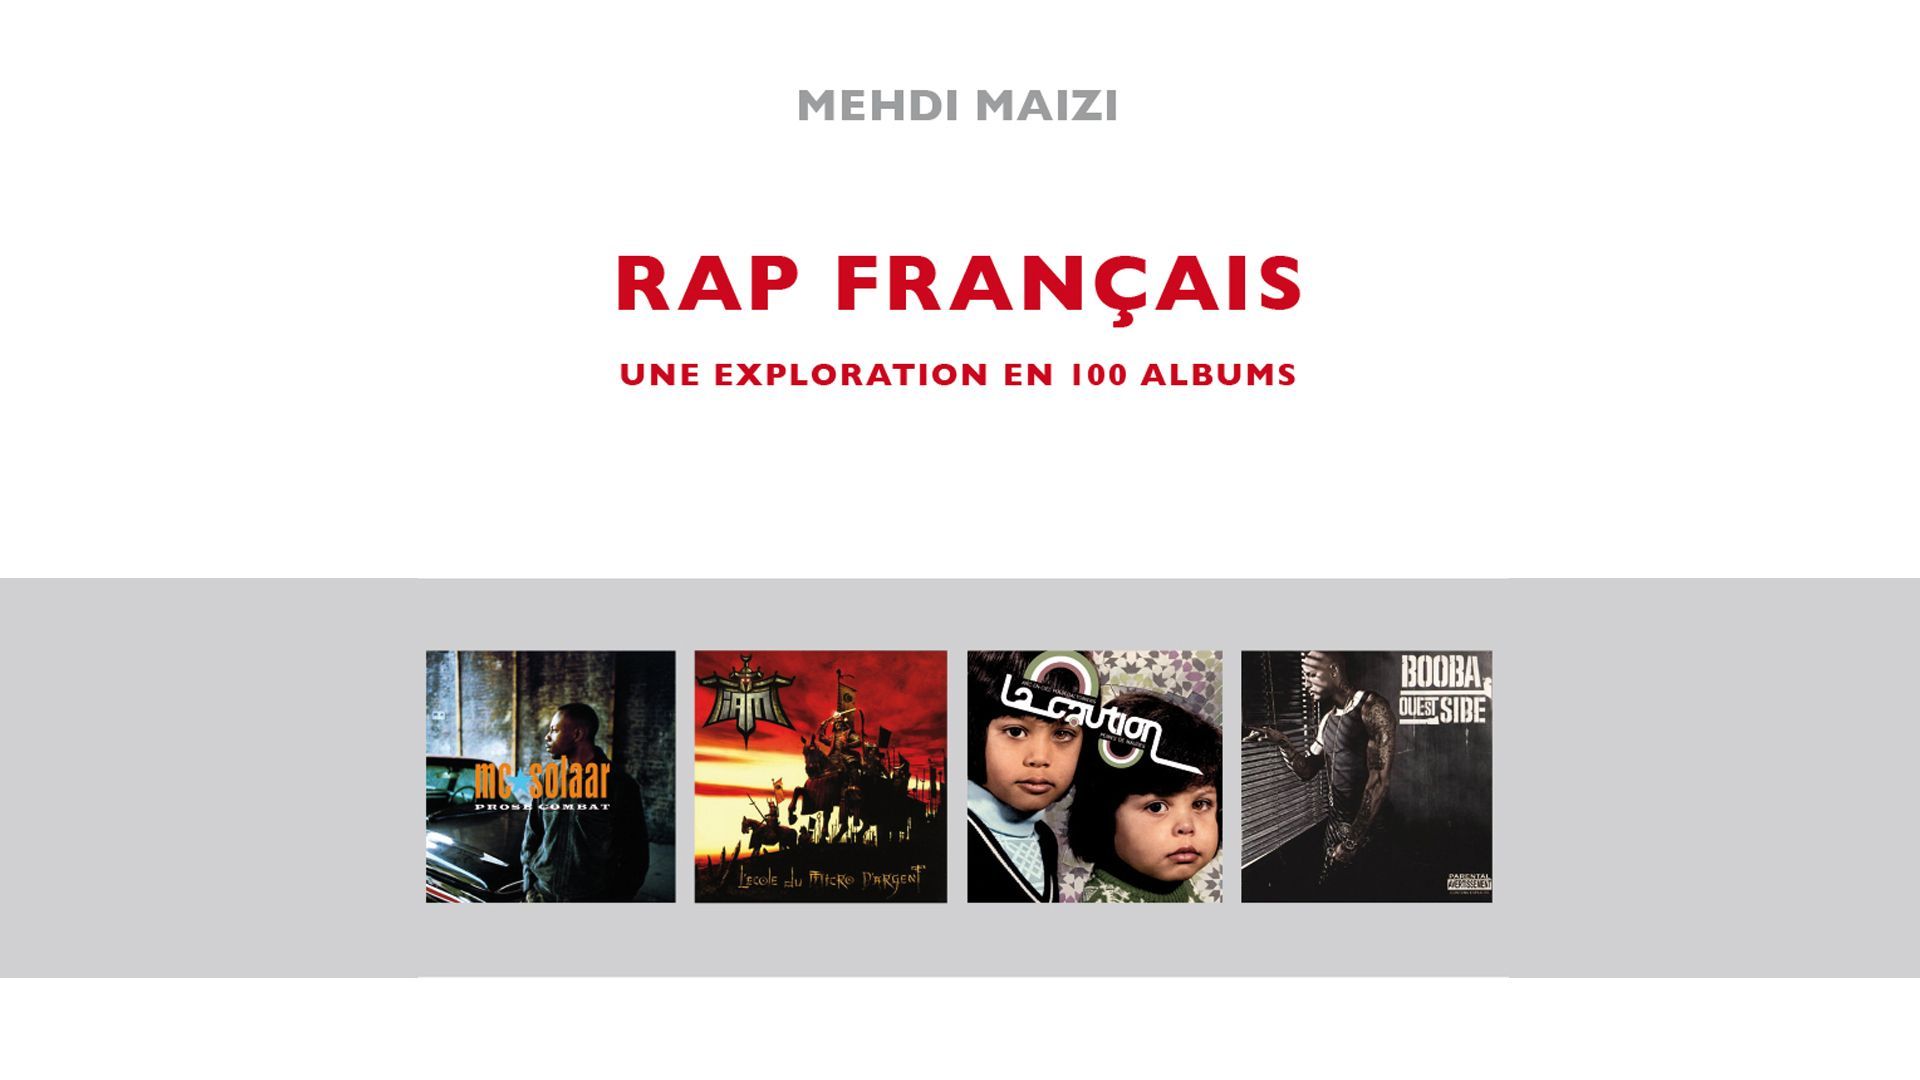 Concours / Le RAP [BOOK] CLUB accueille Mehdi MAïZI pour son ouvrage : Rap français "une exploration en 100 albums"